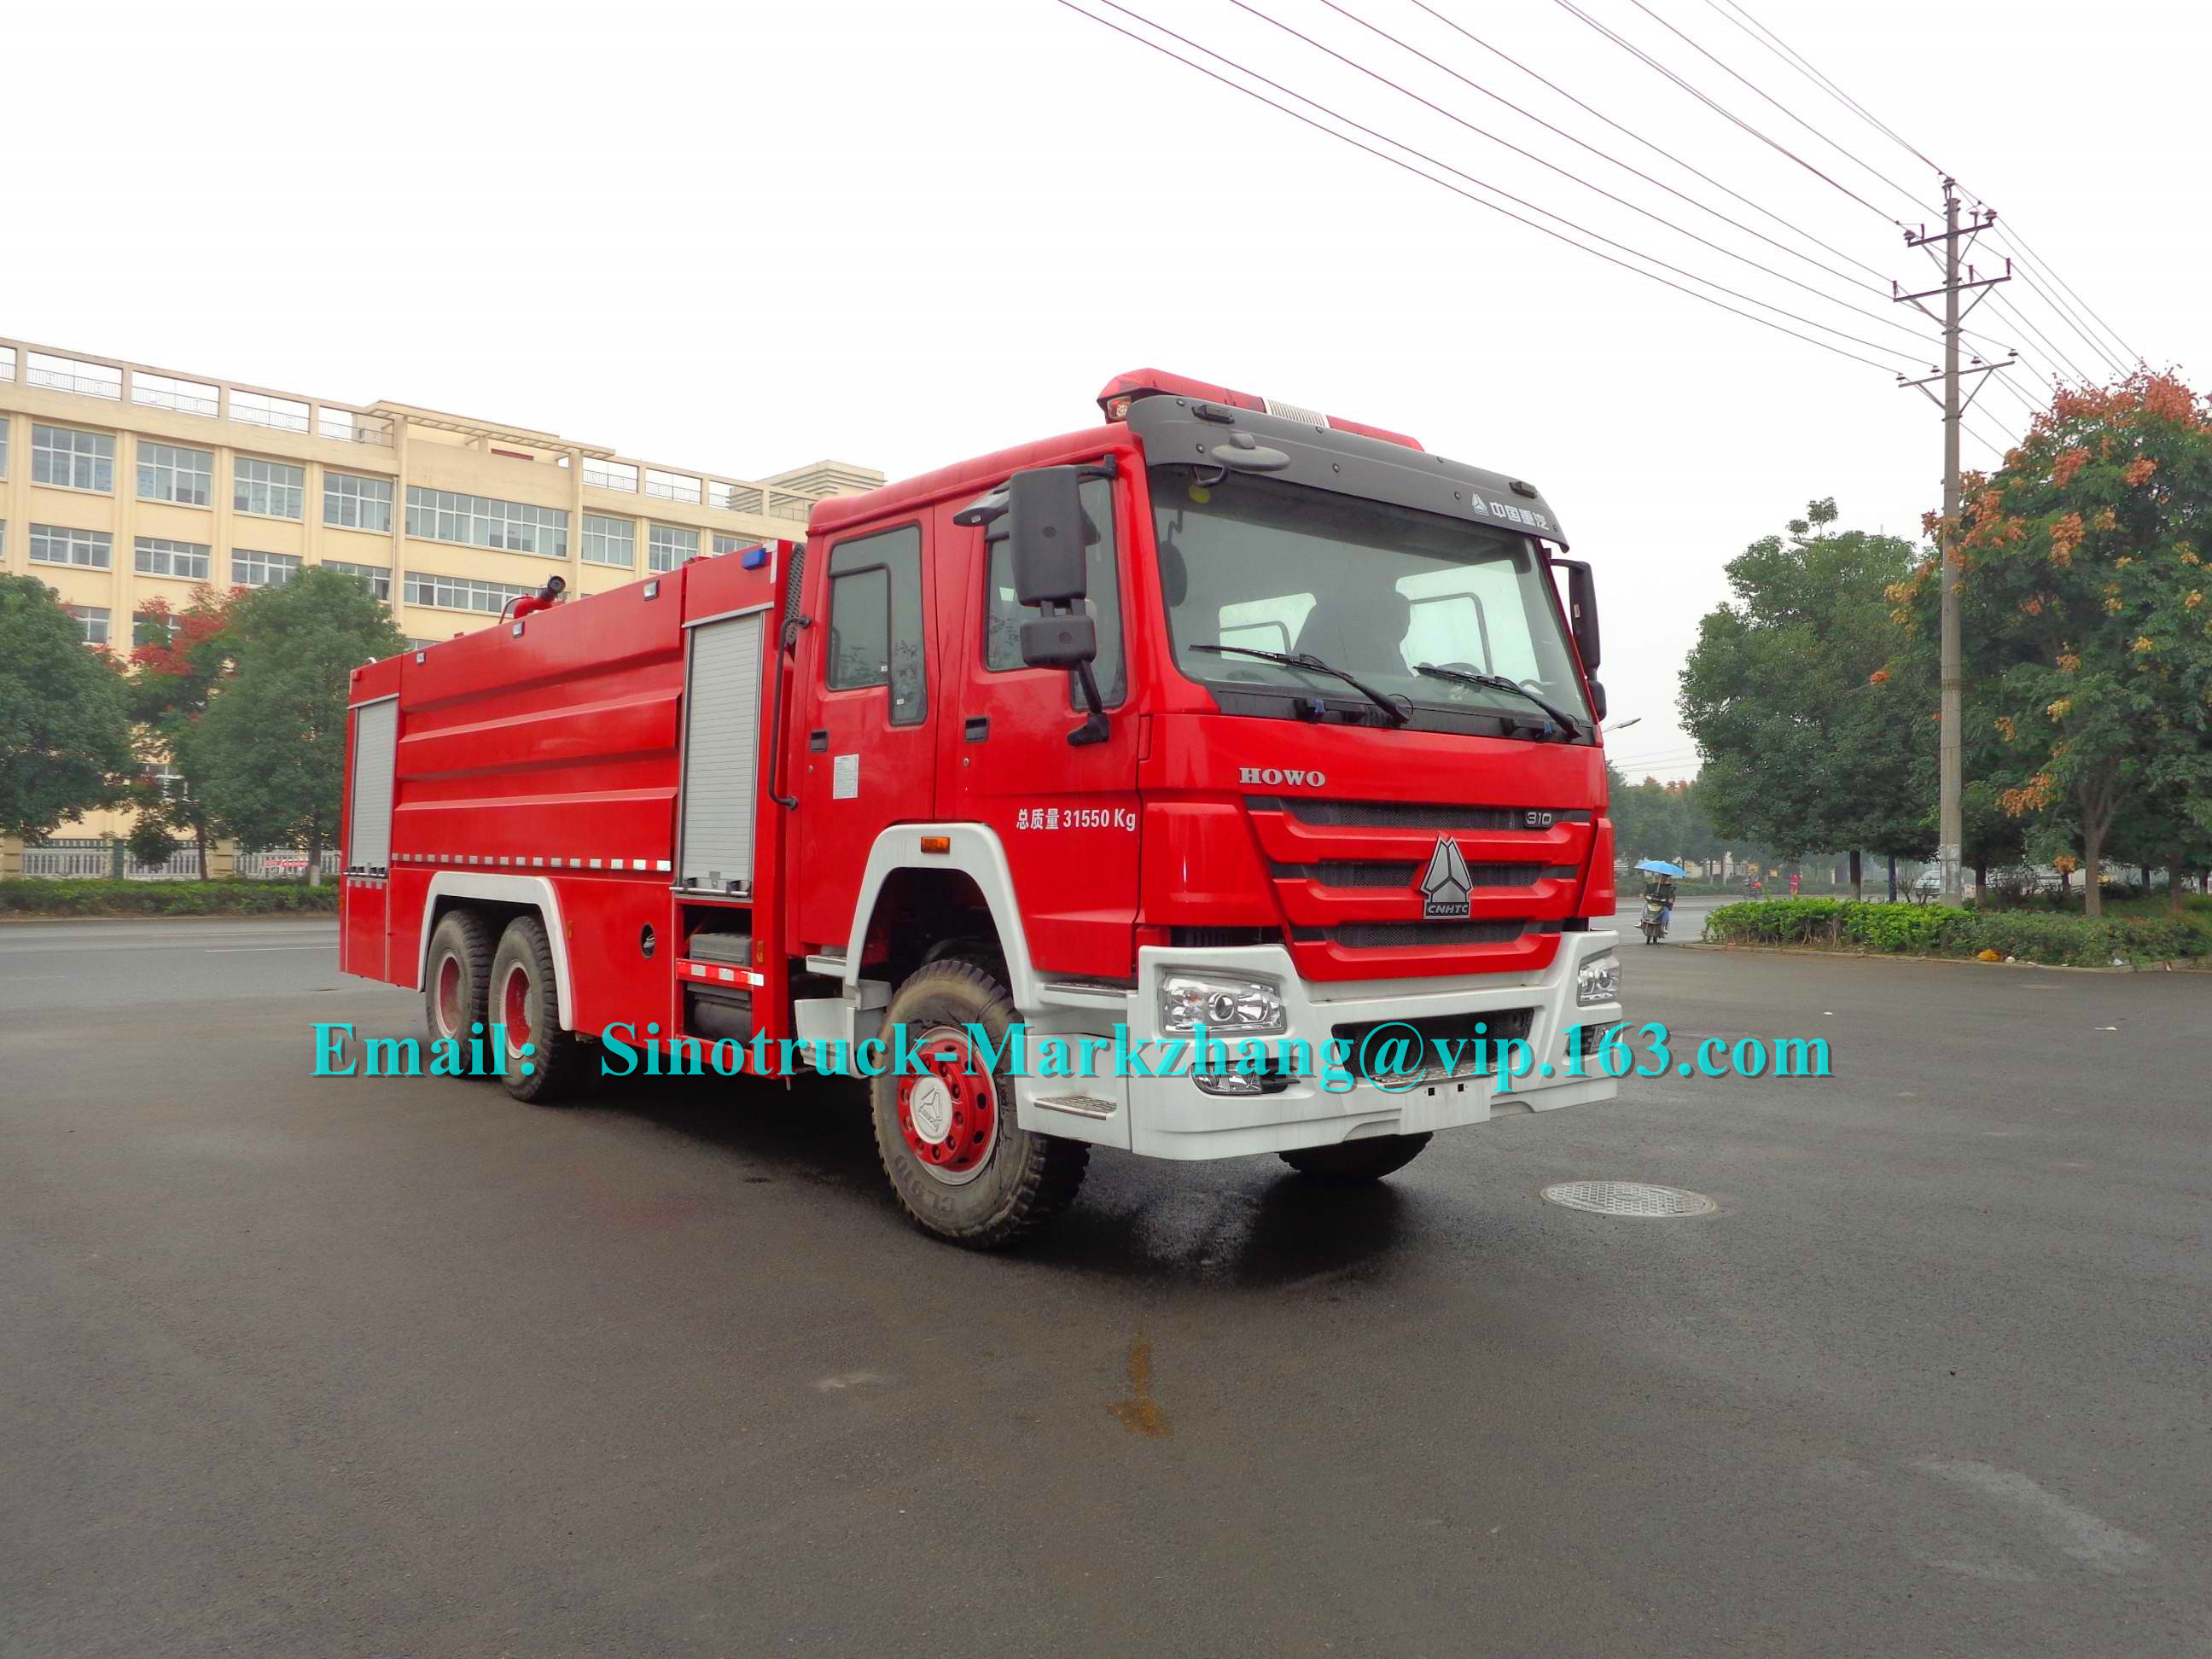 10 van de de Brandbrigade van de speculantenveiligheid van de de Vrachtwagenbrand de Motorvoertuigen 3 Aslhd/rhd Leiding